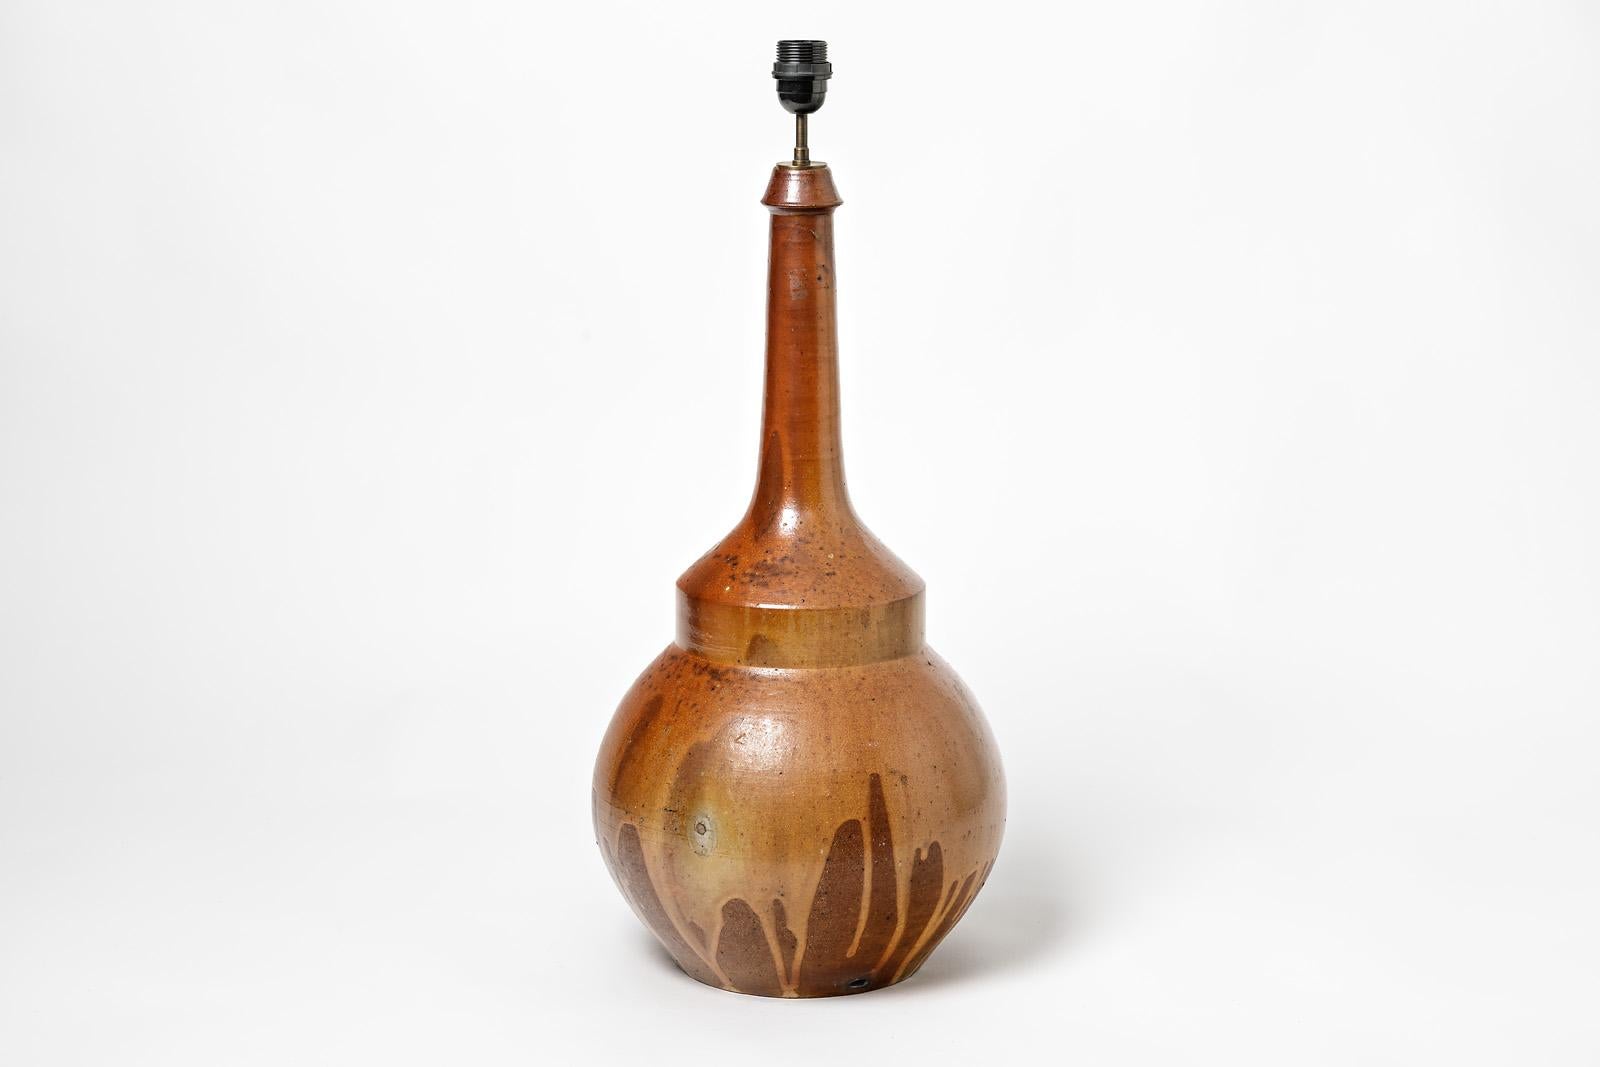 Une grande lampe en céramique de la poterie Sars.
Conditions d'origine parfaites.
Signé sous la base,
vers 1960-1970.
Vendu avec un nouveau système électrique européen.
Les dimensions sont mentionnées uniquement pour la céramique.